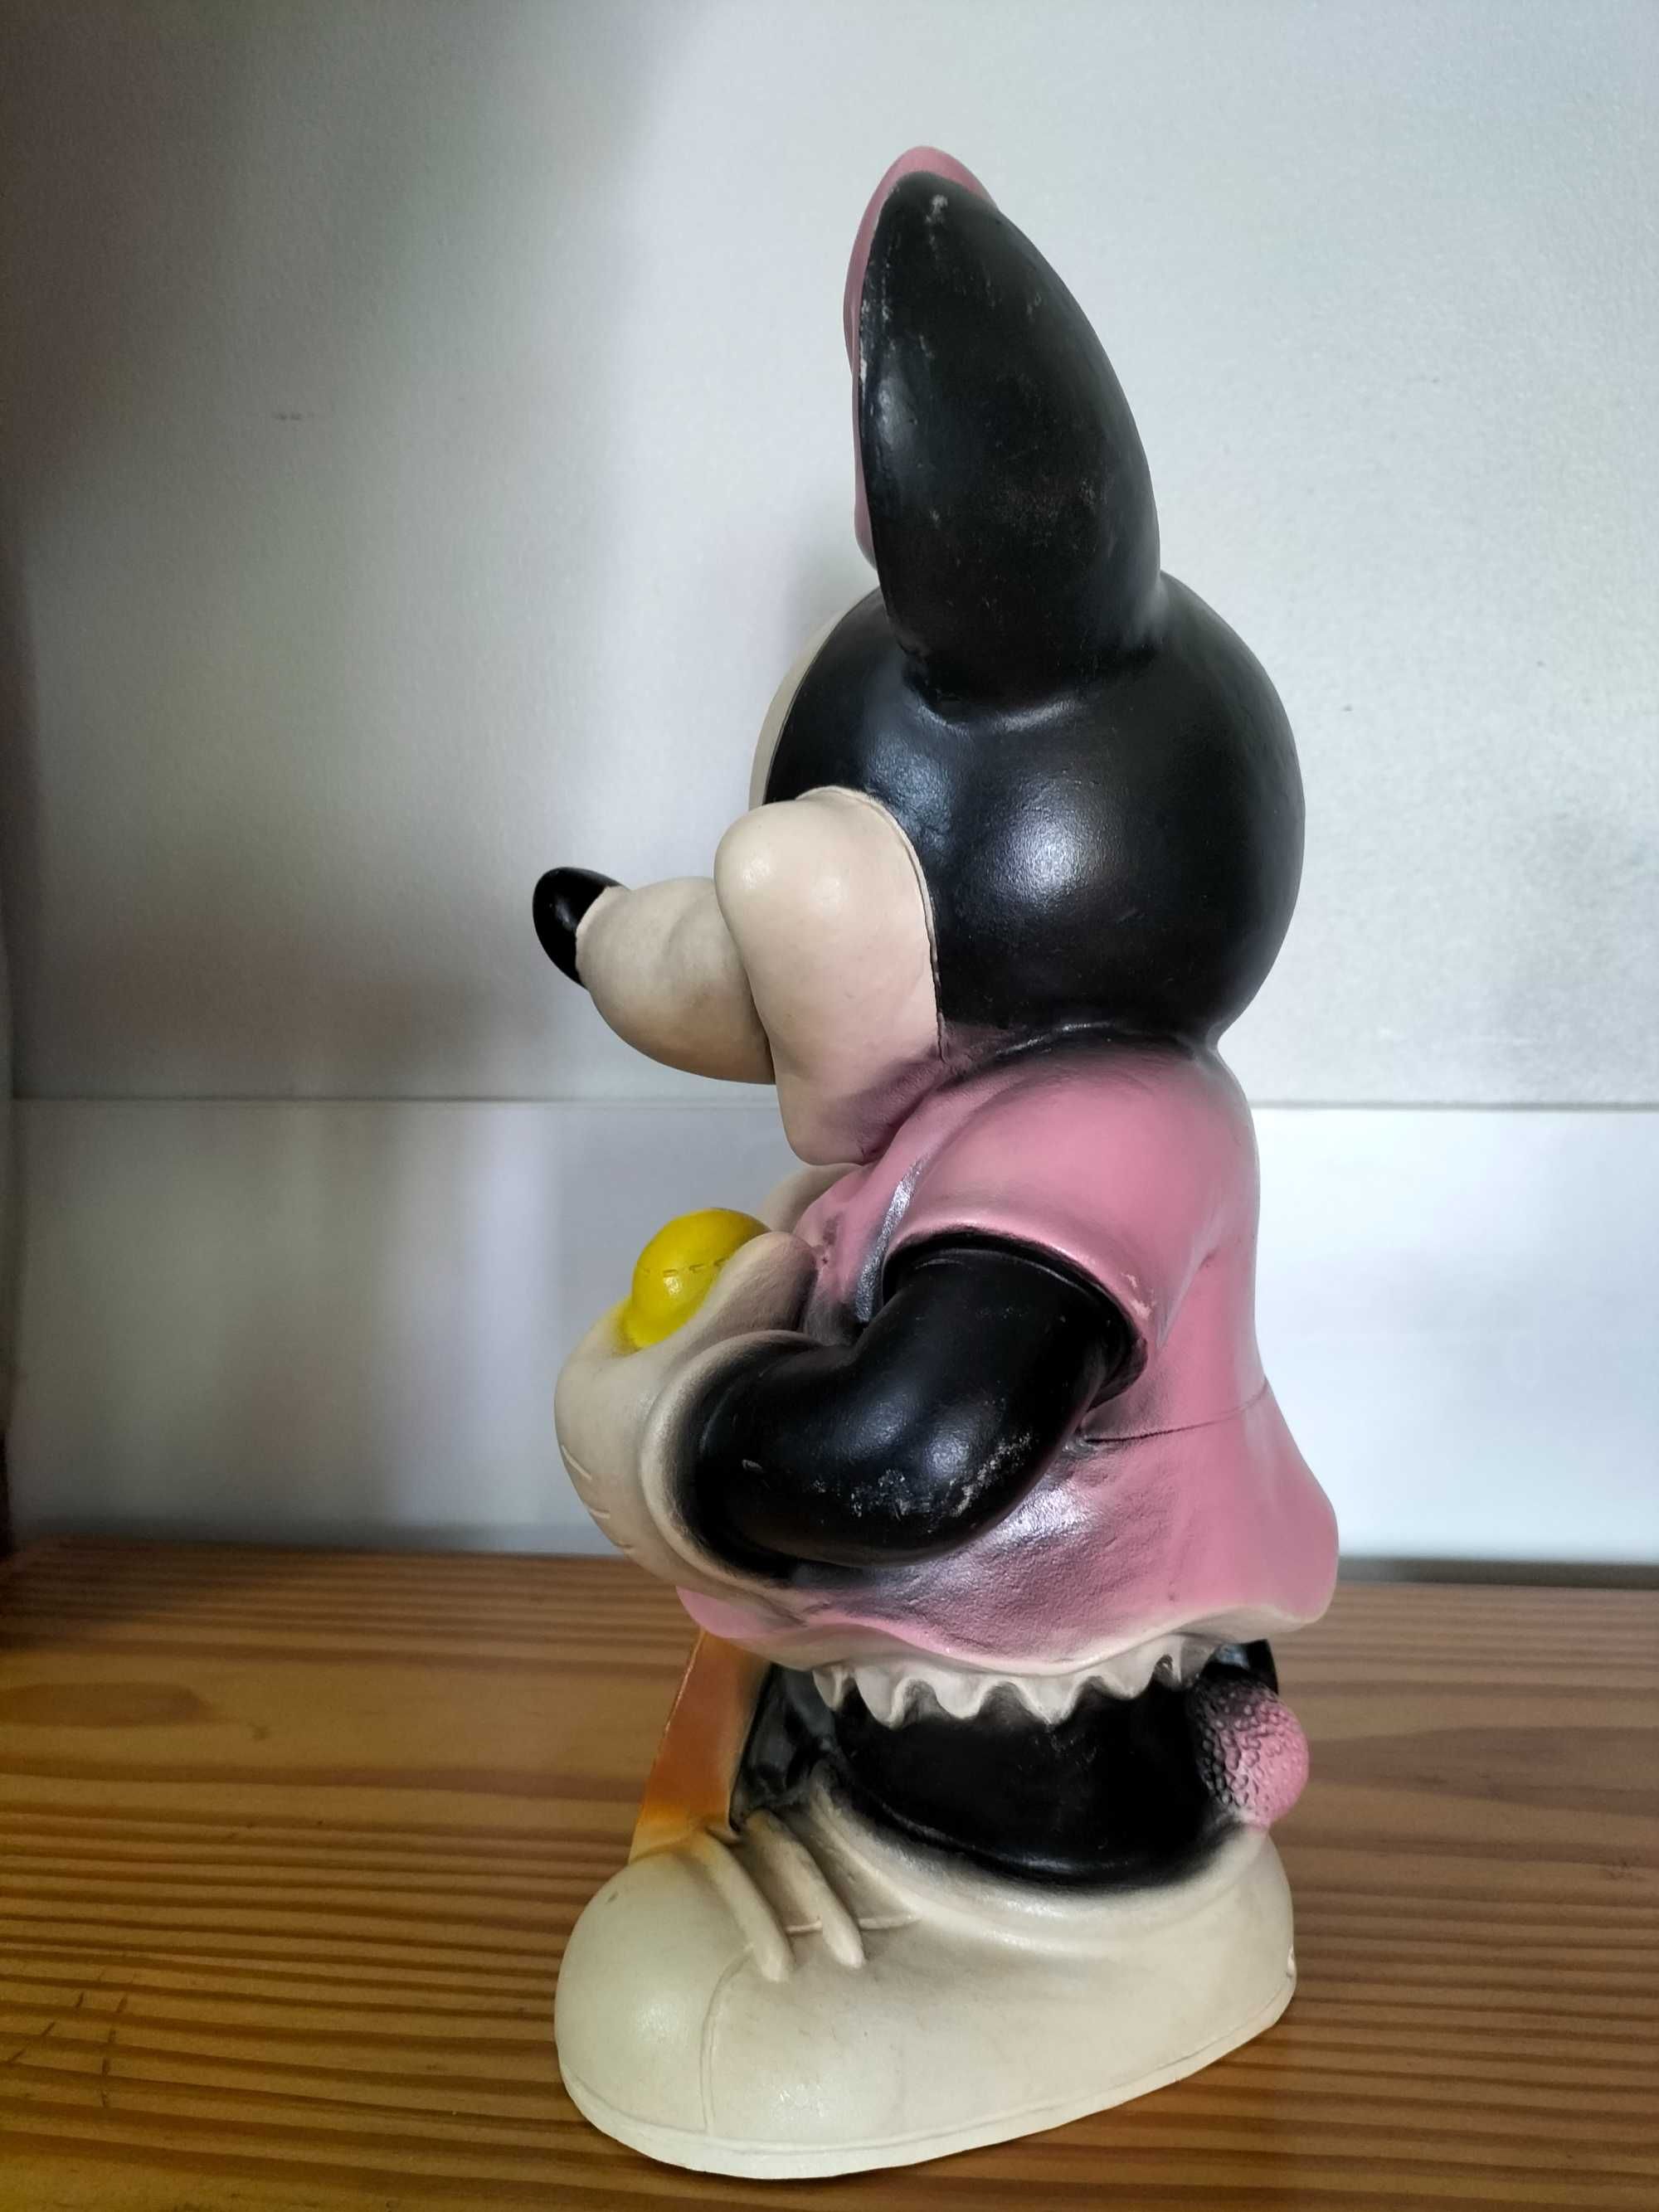 Minnie "Disney" estatueta em borracha